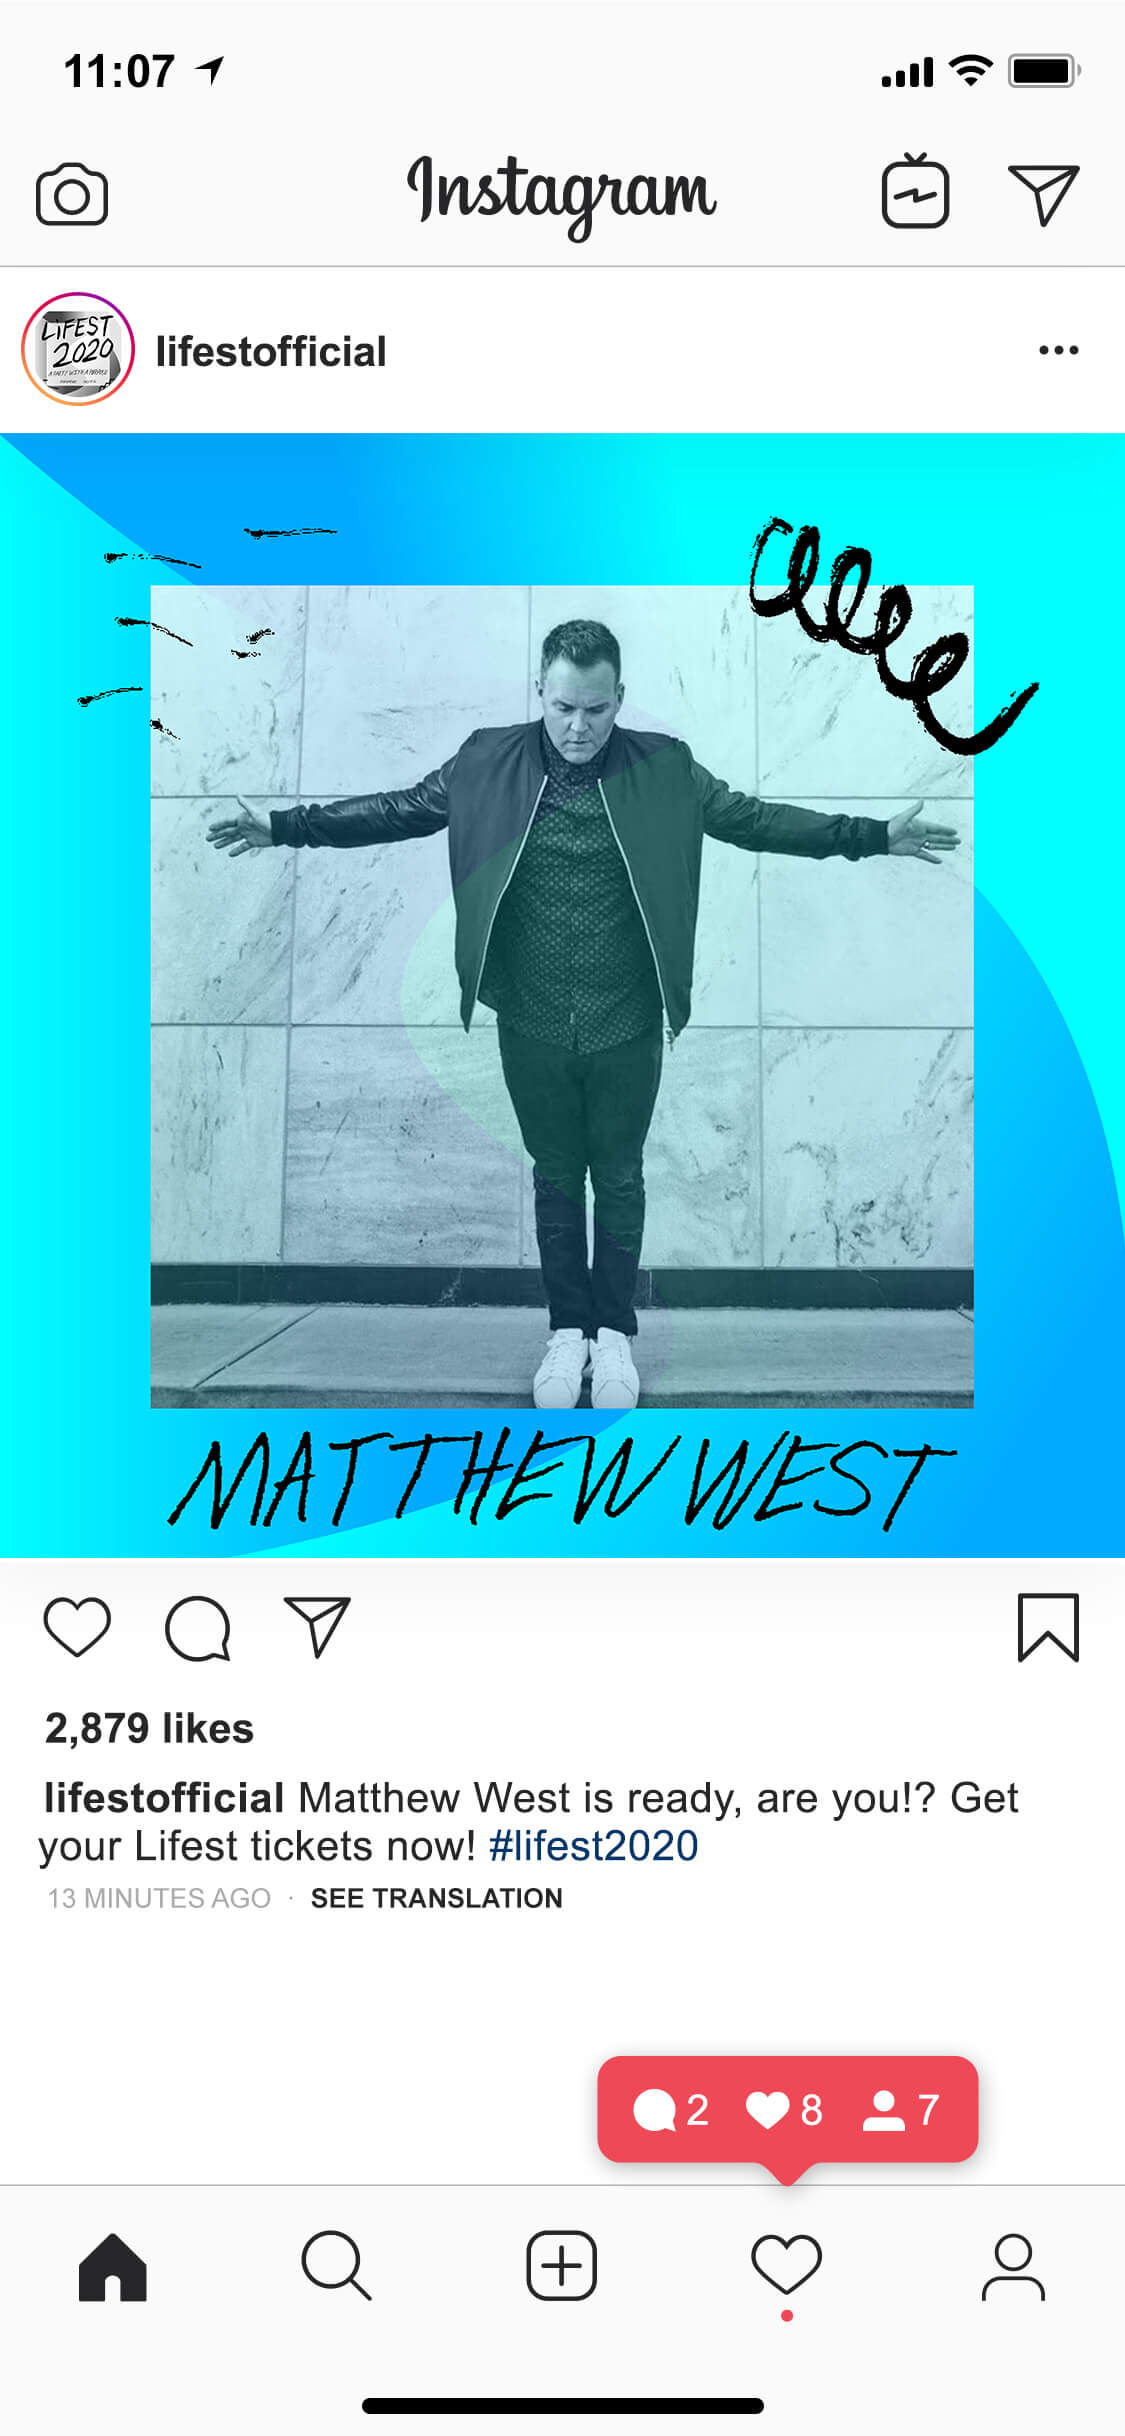 Lifest neon design Instagram post 3 mockup, featuring music artist Matthew West